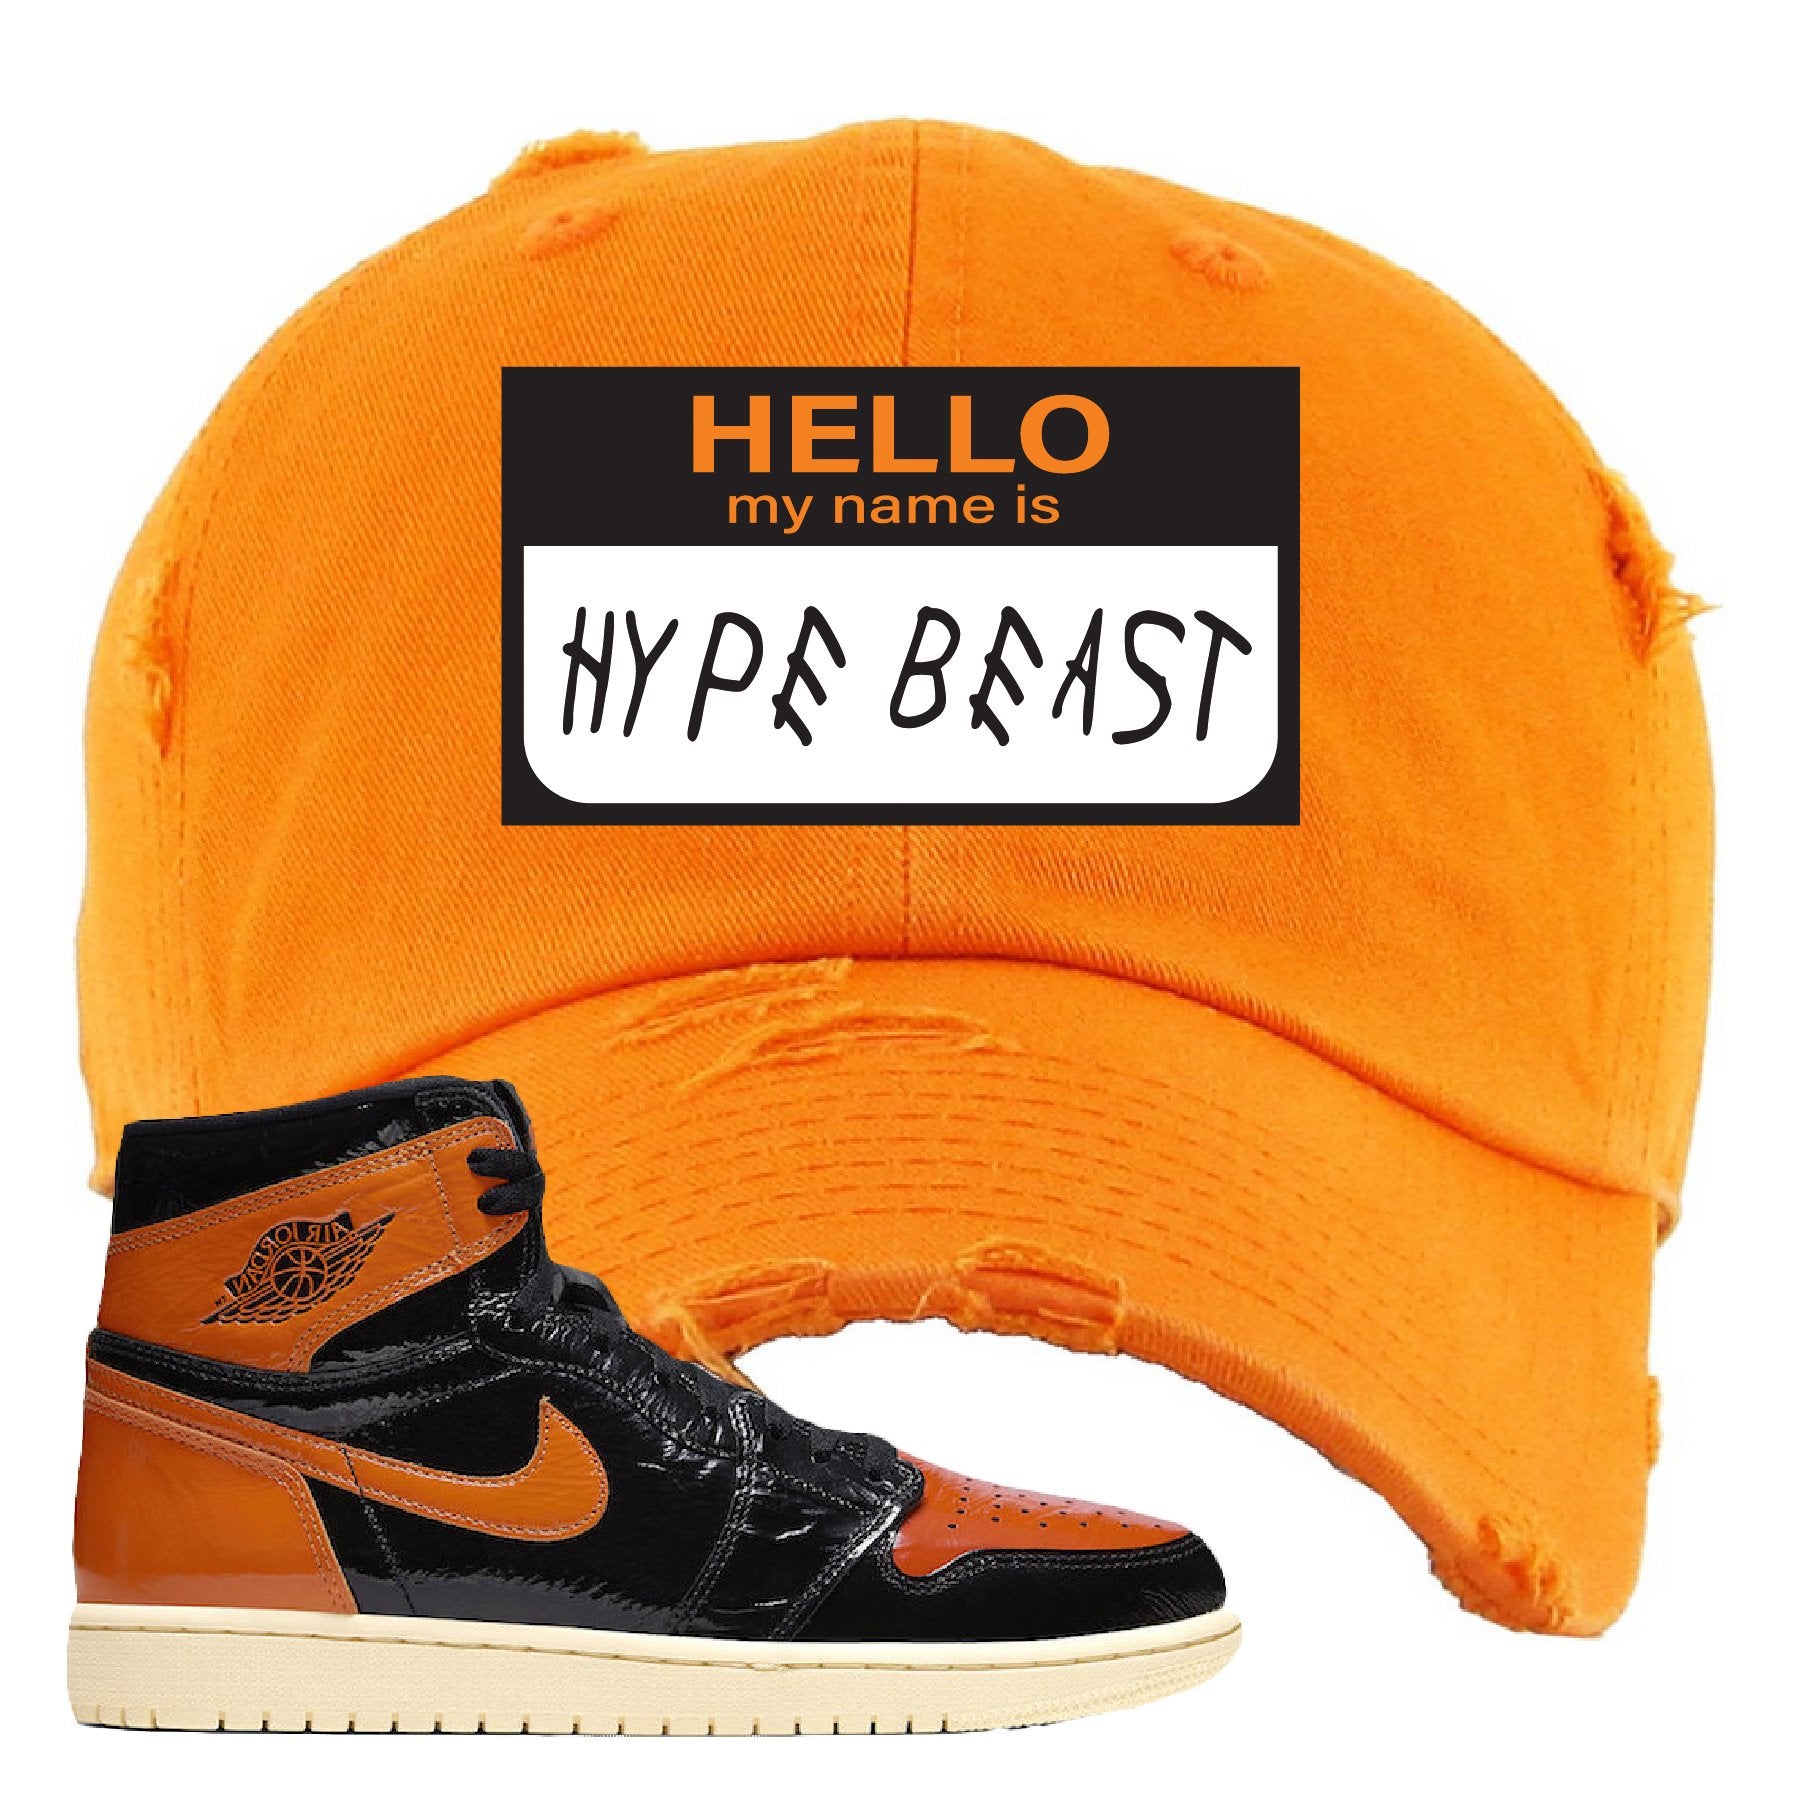 Jordan 1 Shattered Backboard Hello My Name Is Hello My Name Is Hyperbeast Orange Sneaker Hook Up Distressed Dad Hat